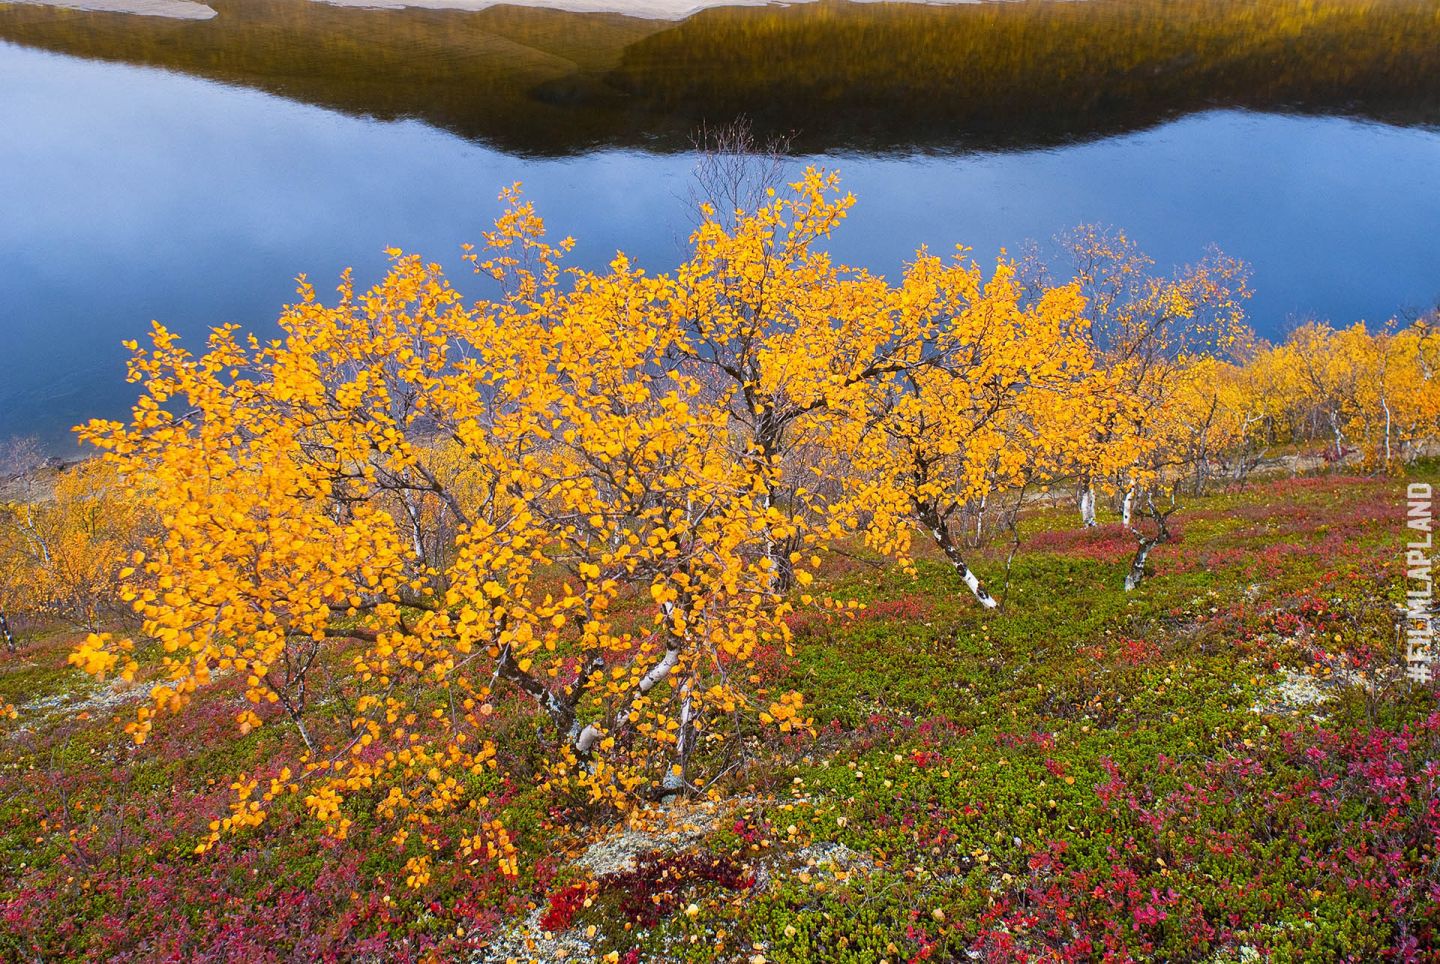 Dwarf birches in Utsjoki, Finland in autumn